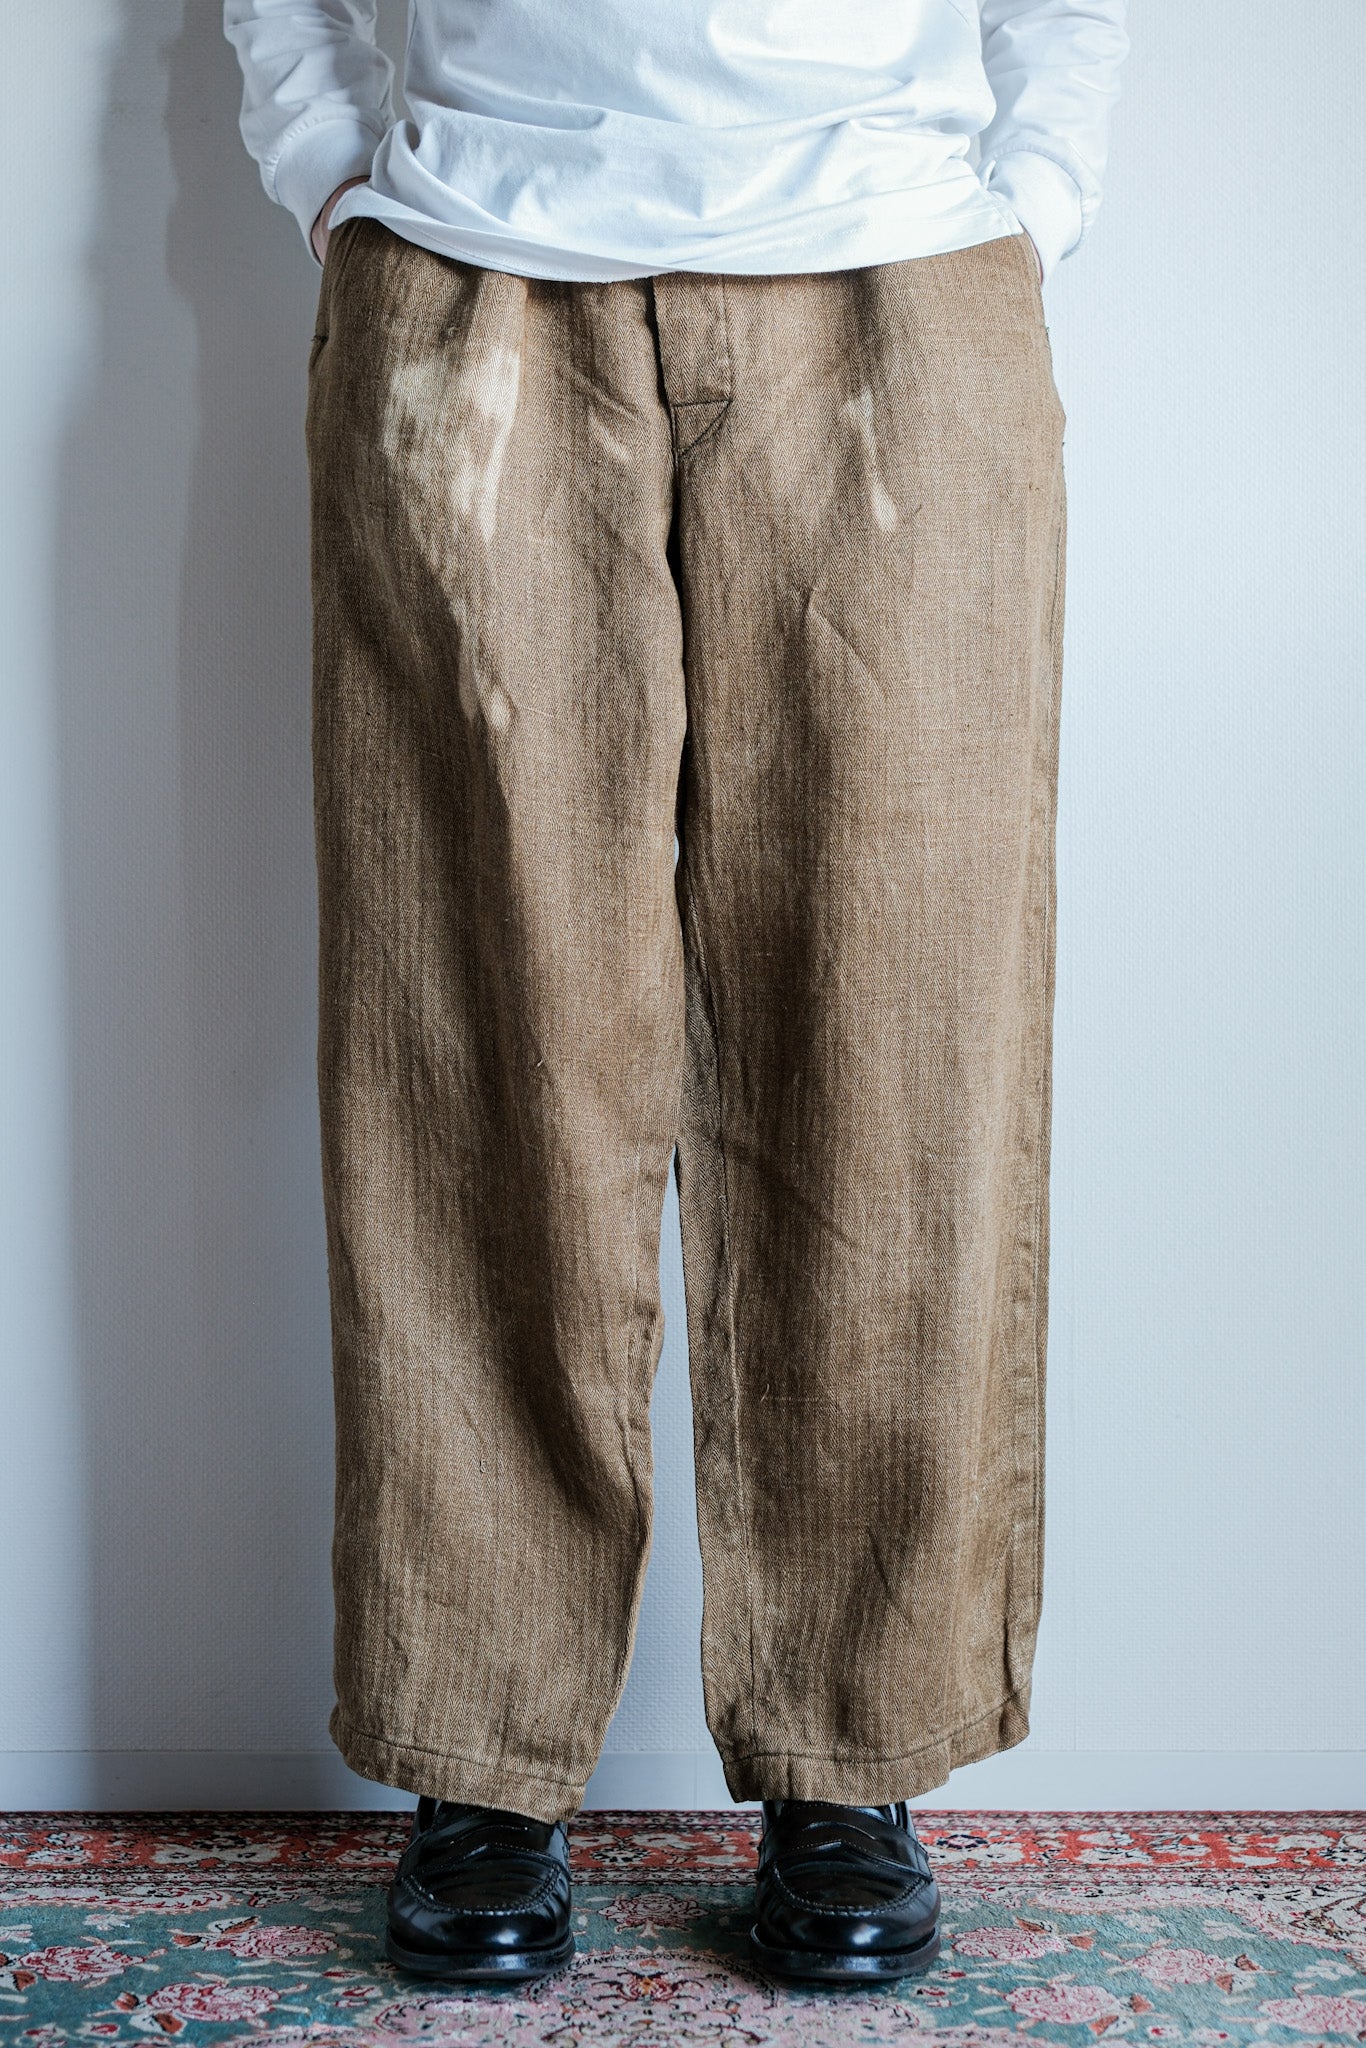 [〜40年代]wwⅱ德國軍隊Drillich HBT亞麻褲“不尋常的顏色”“ Wehrmacht”